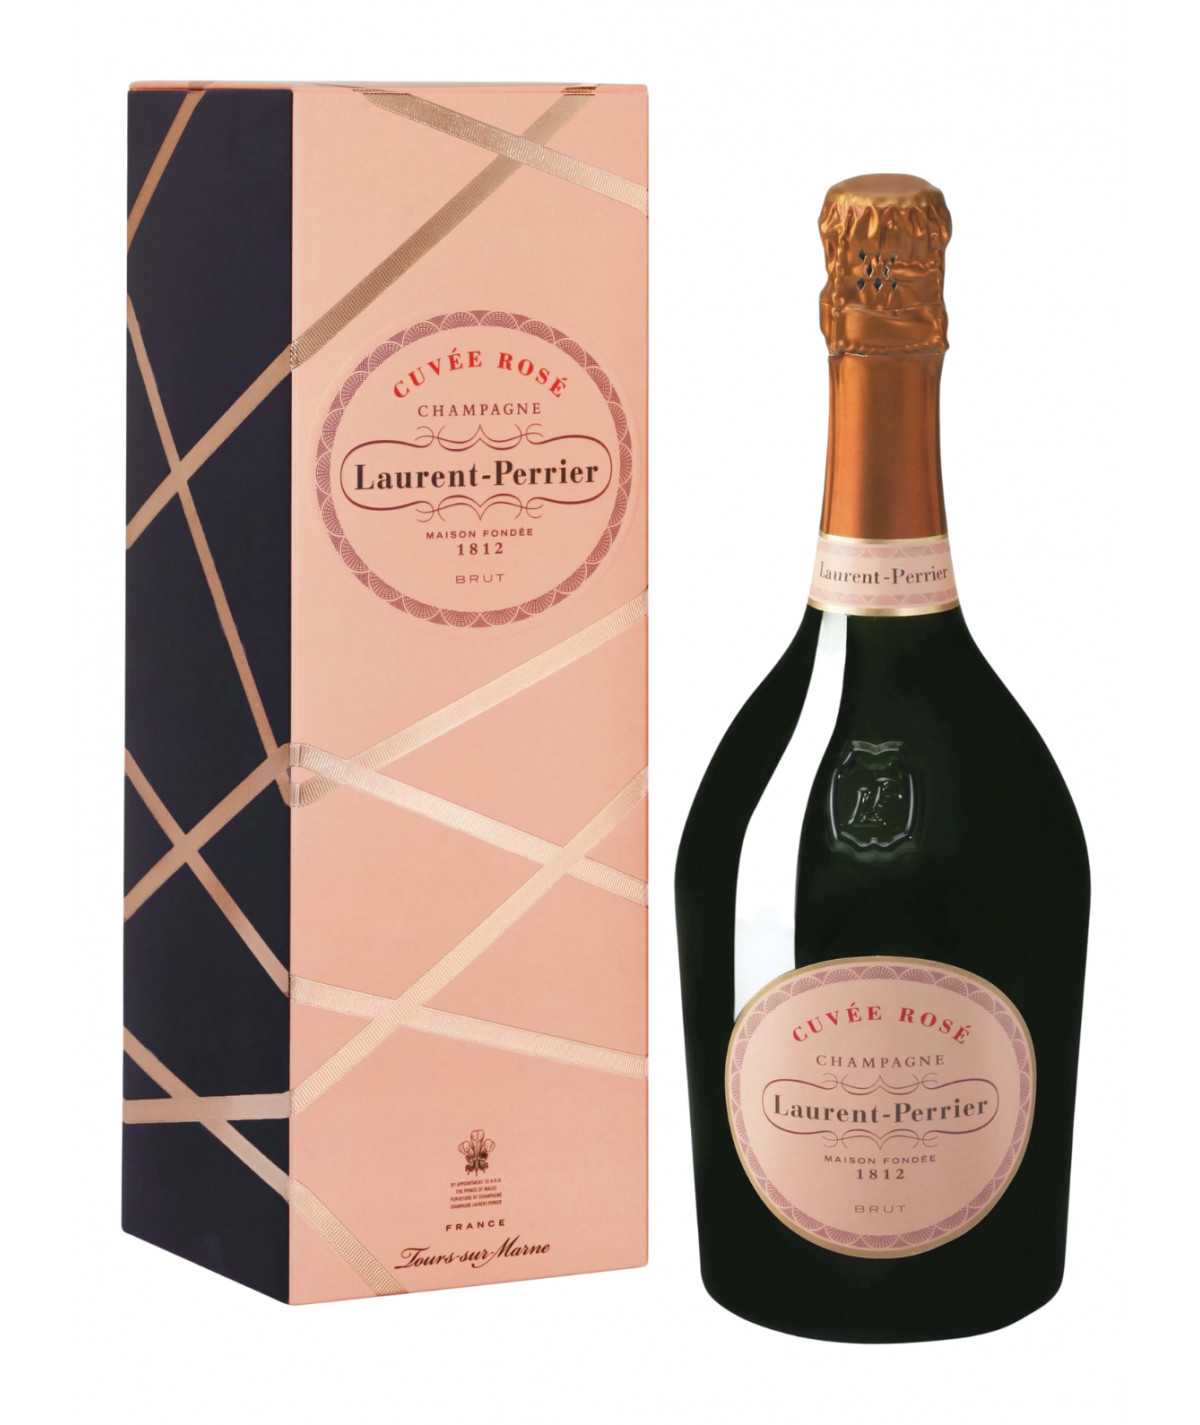 Magnum de champagne LAURENT-PERRIER Cuvée Rosé